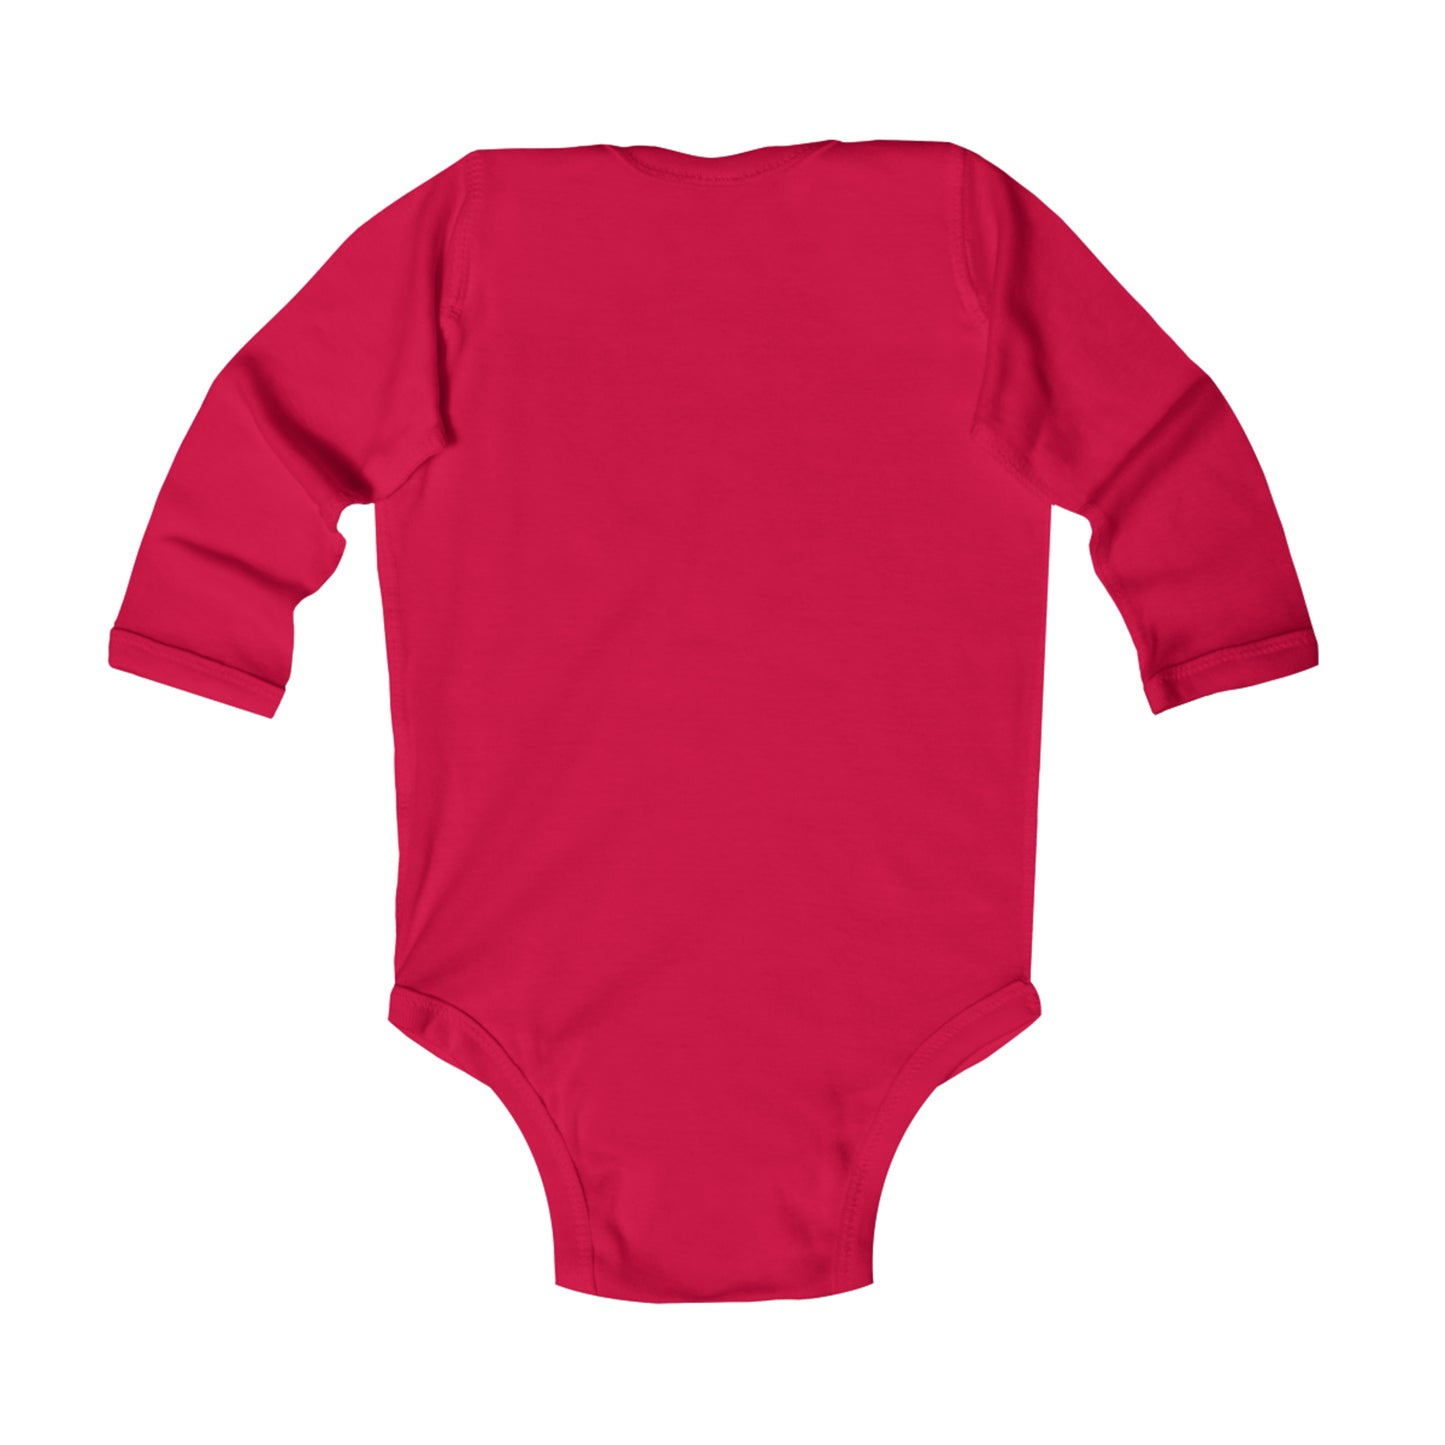 Bully-Proof NJ Infant Long Sleeve Bodysuit